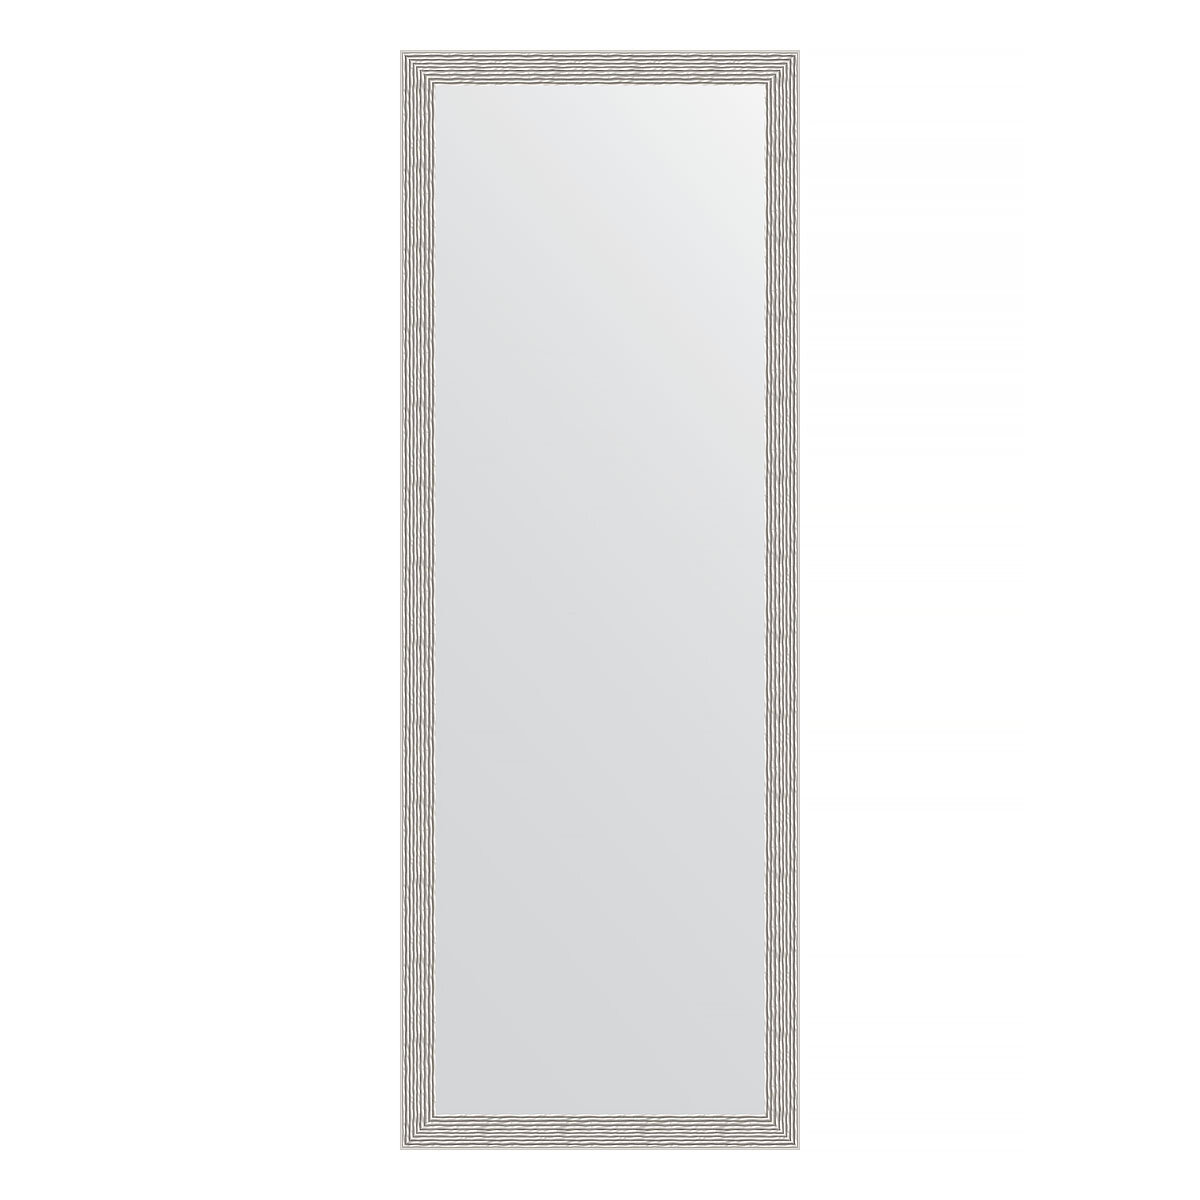 Зеркало настенное EVOFORM в багетной раме волна алюминий, 51х141 см, для гостиной, прихожей, кабинета, спальни и ванной комнаты, BY 3102